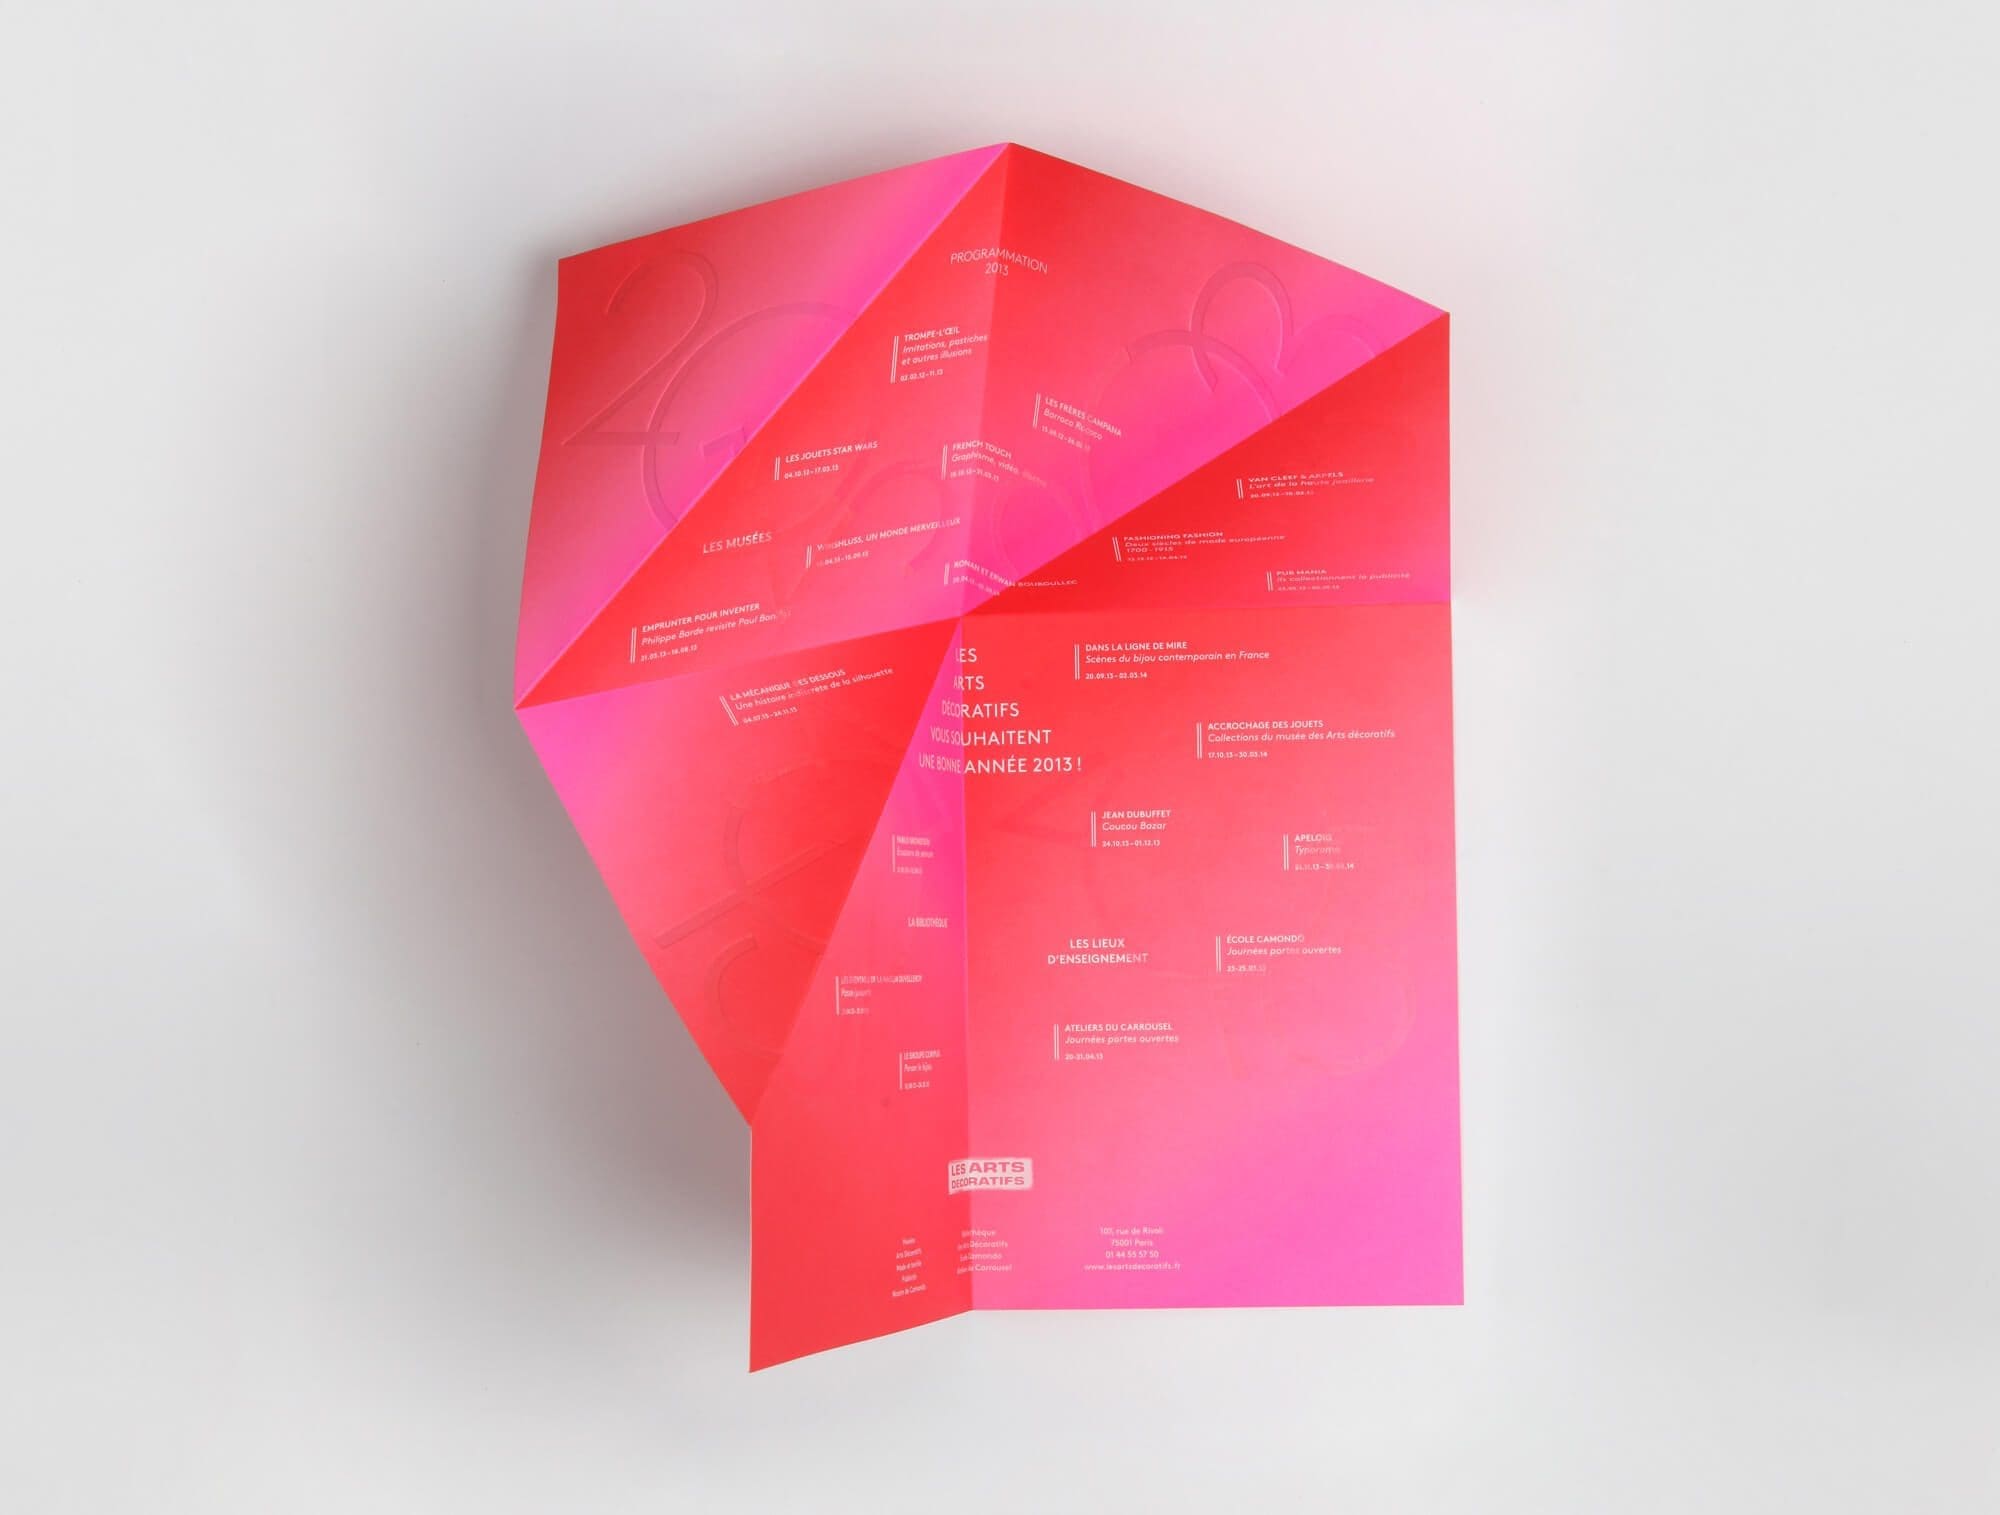 Origami, gaufrage, pliage, rose rouge, telle est la carte de vœux des arts décoratifs pour l'année 2013, un design et pliage signés IchetKar